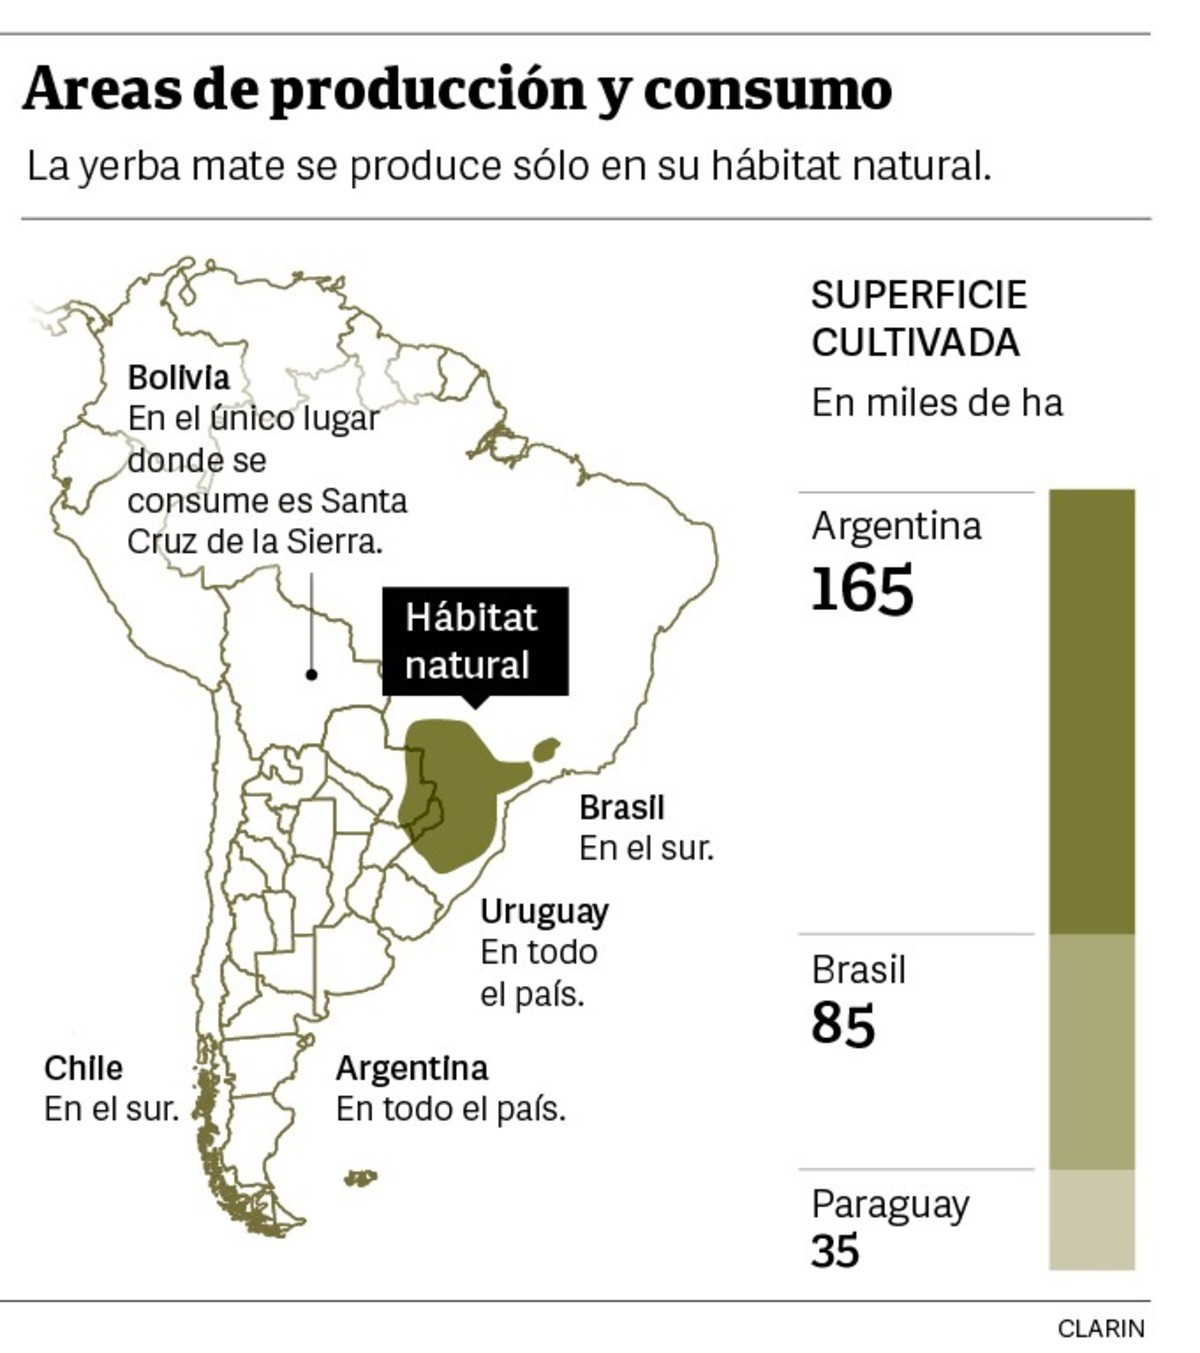 Cuántos kilos de yerba mate consumen los argentinos